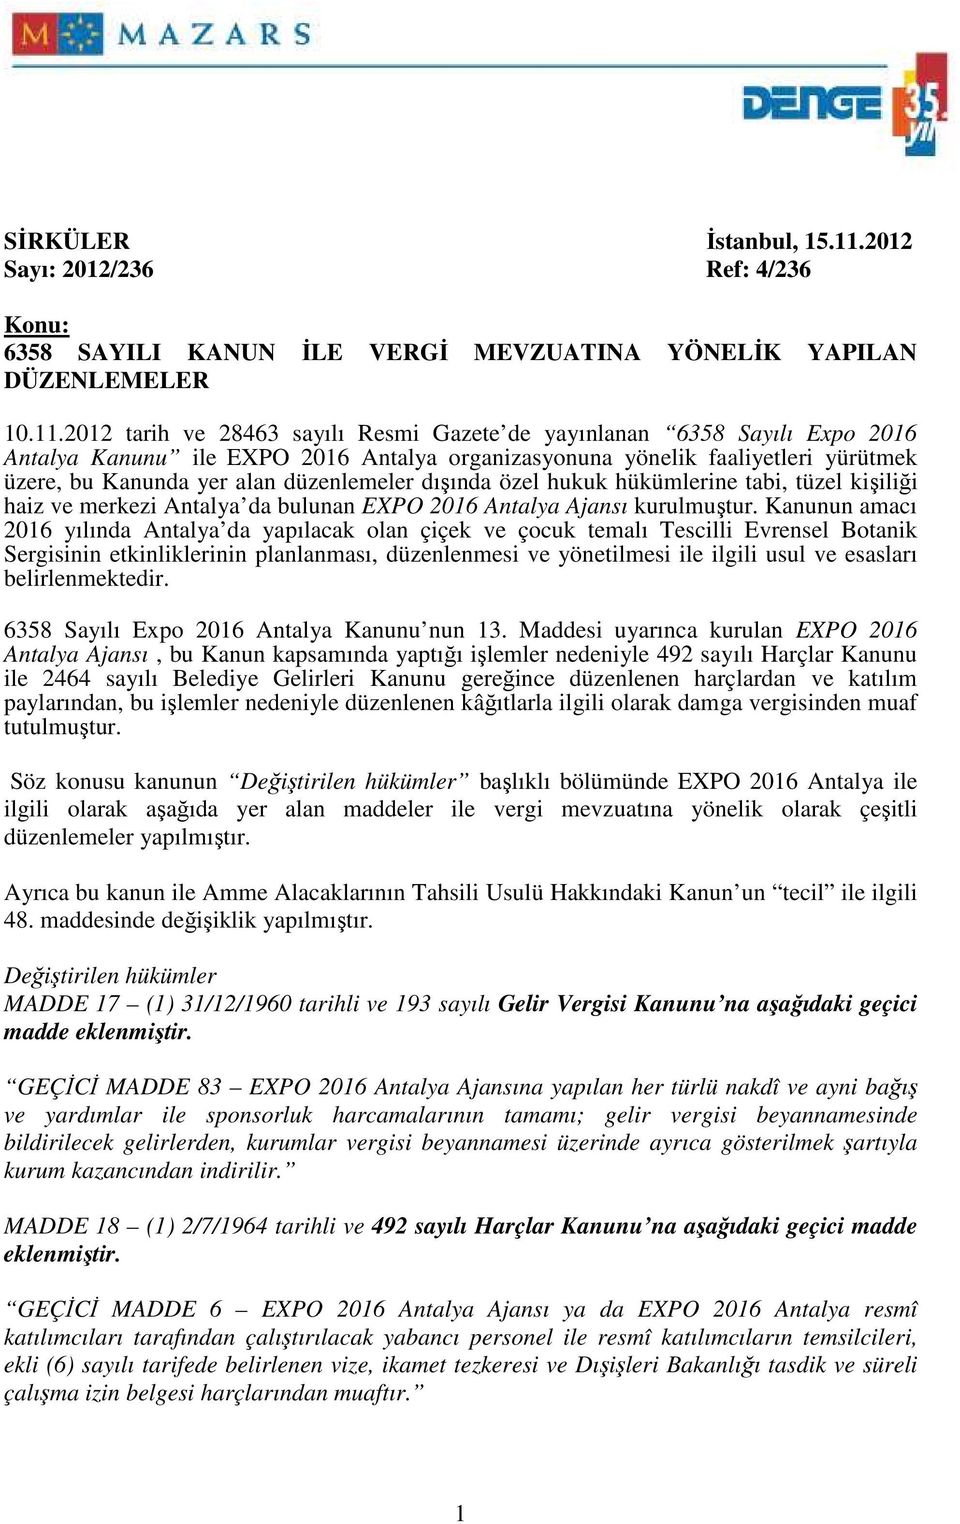 2012 tarih ve 28463 sayılı Resmi Gazete de yayınlanan 6358 Sayılı Expo 2016 Antalya Kanunu ile EXPO 2016 Antalya organizasyonuna yönelik faaliyetleri yürütmek üzere, bu Kanunda yer alan düzenlemeler